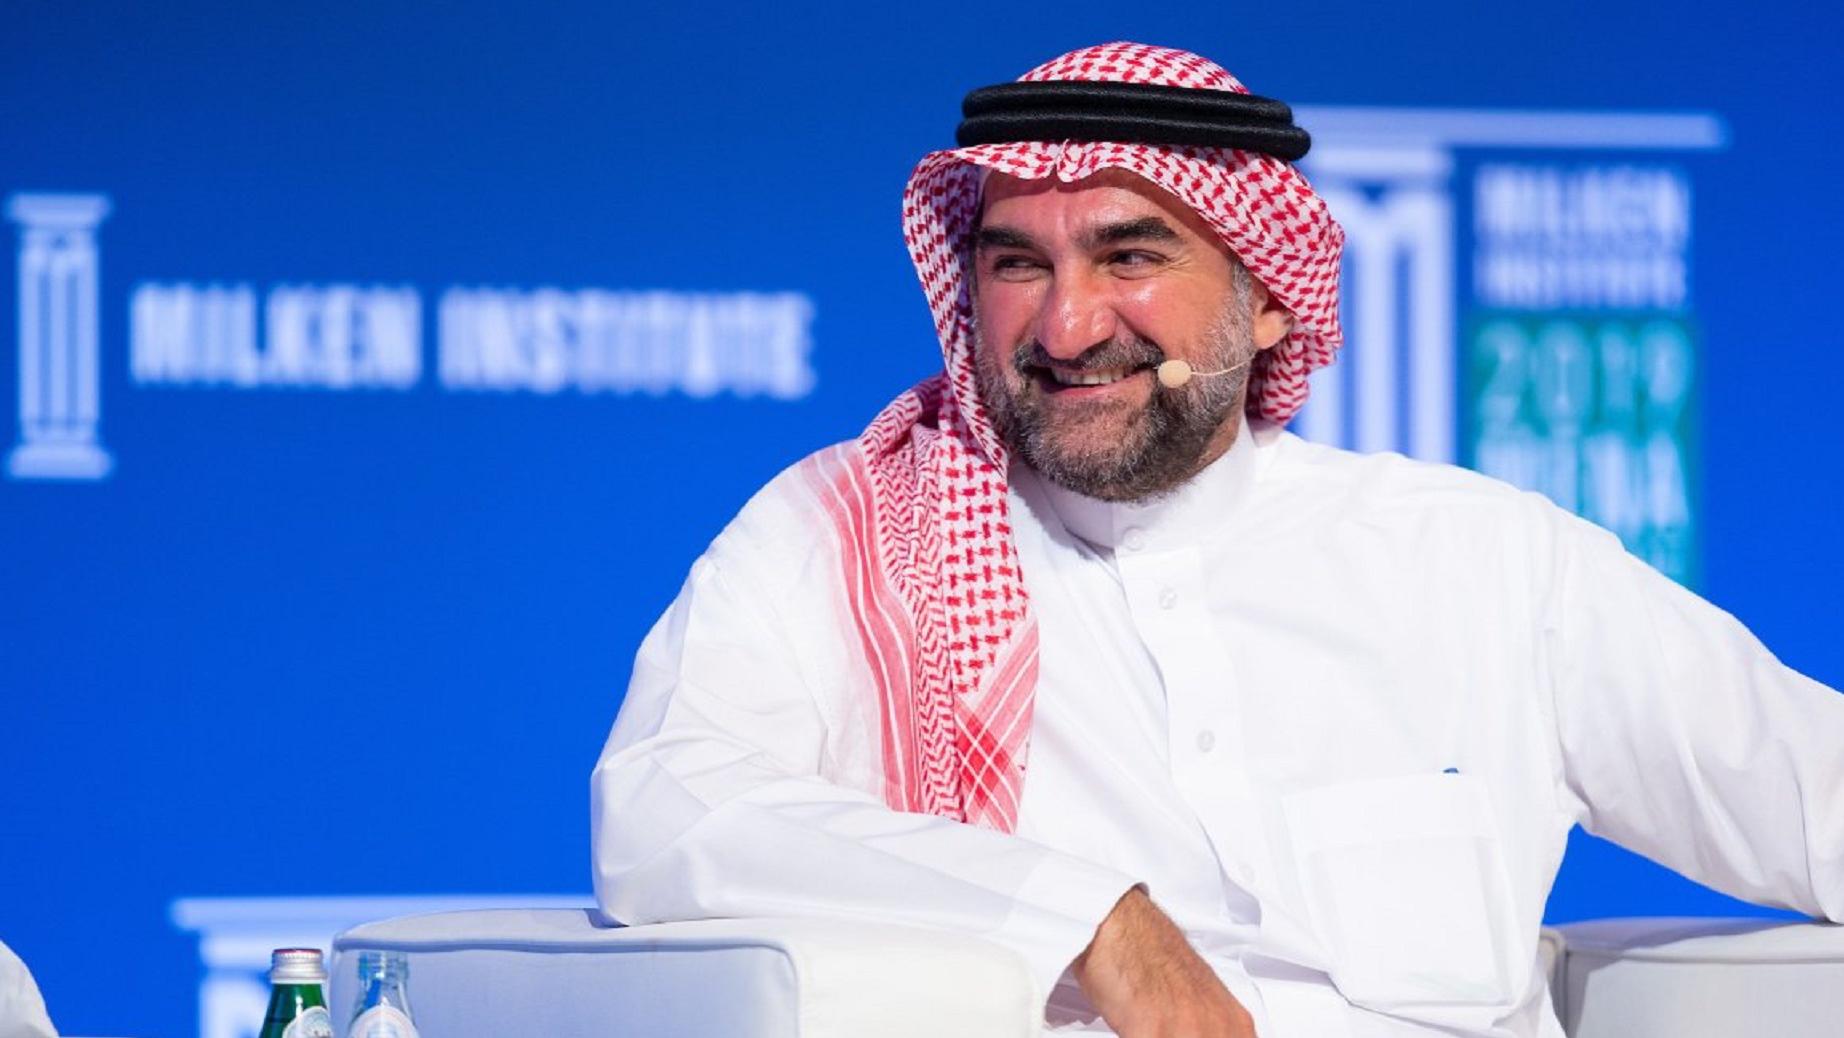 ياسر الرميان محافظ صندوق الاستثمارات العامة السعودي، 